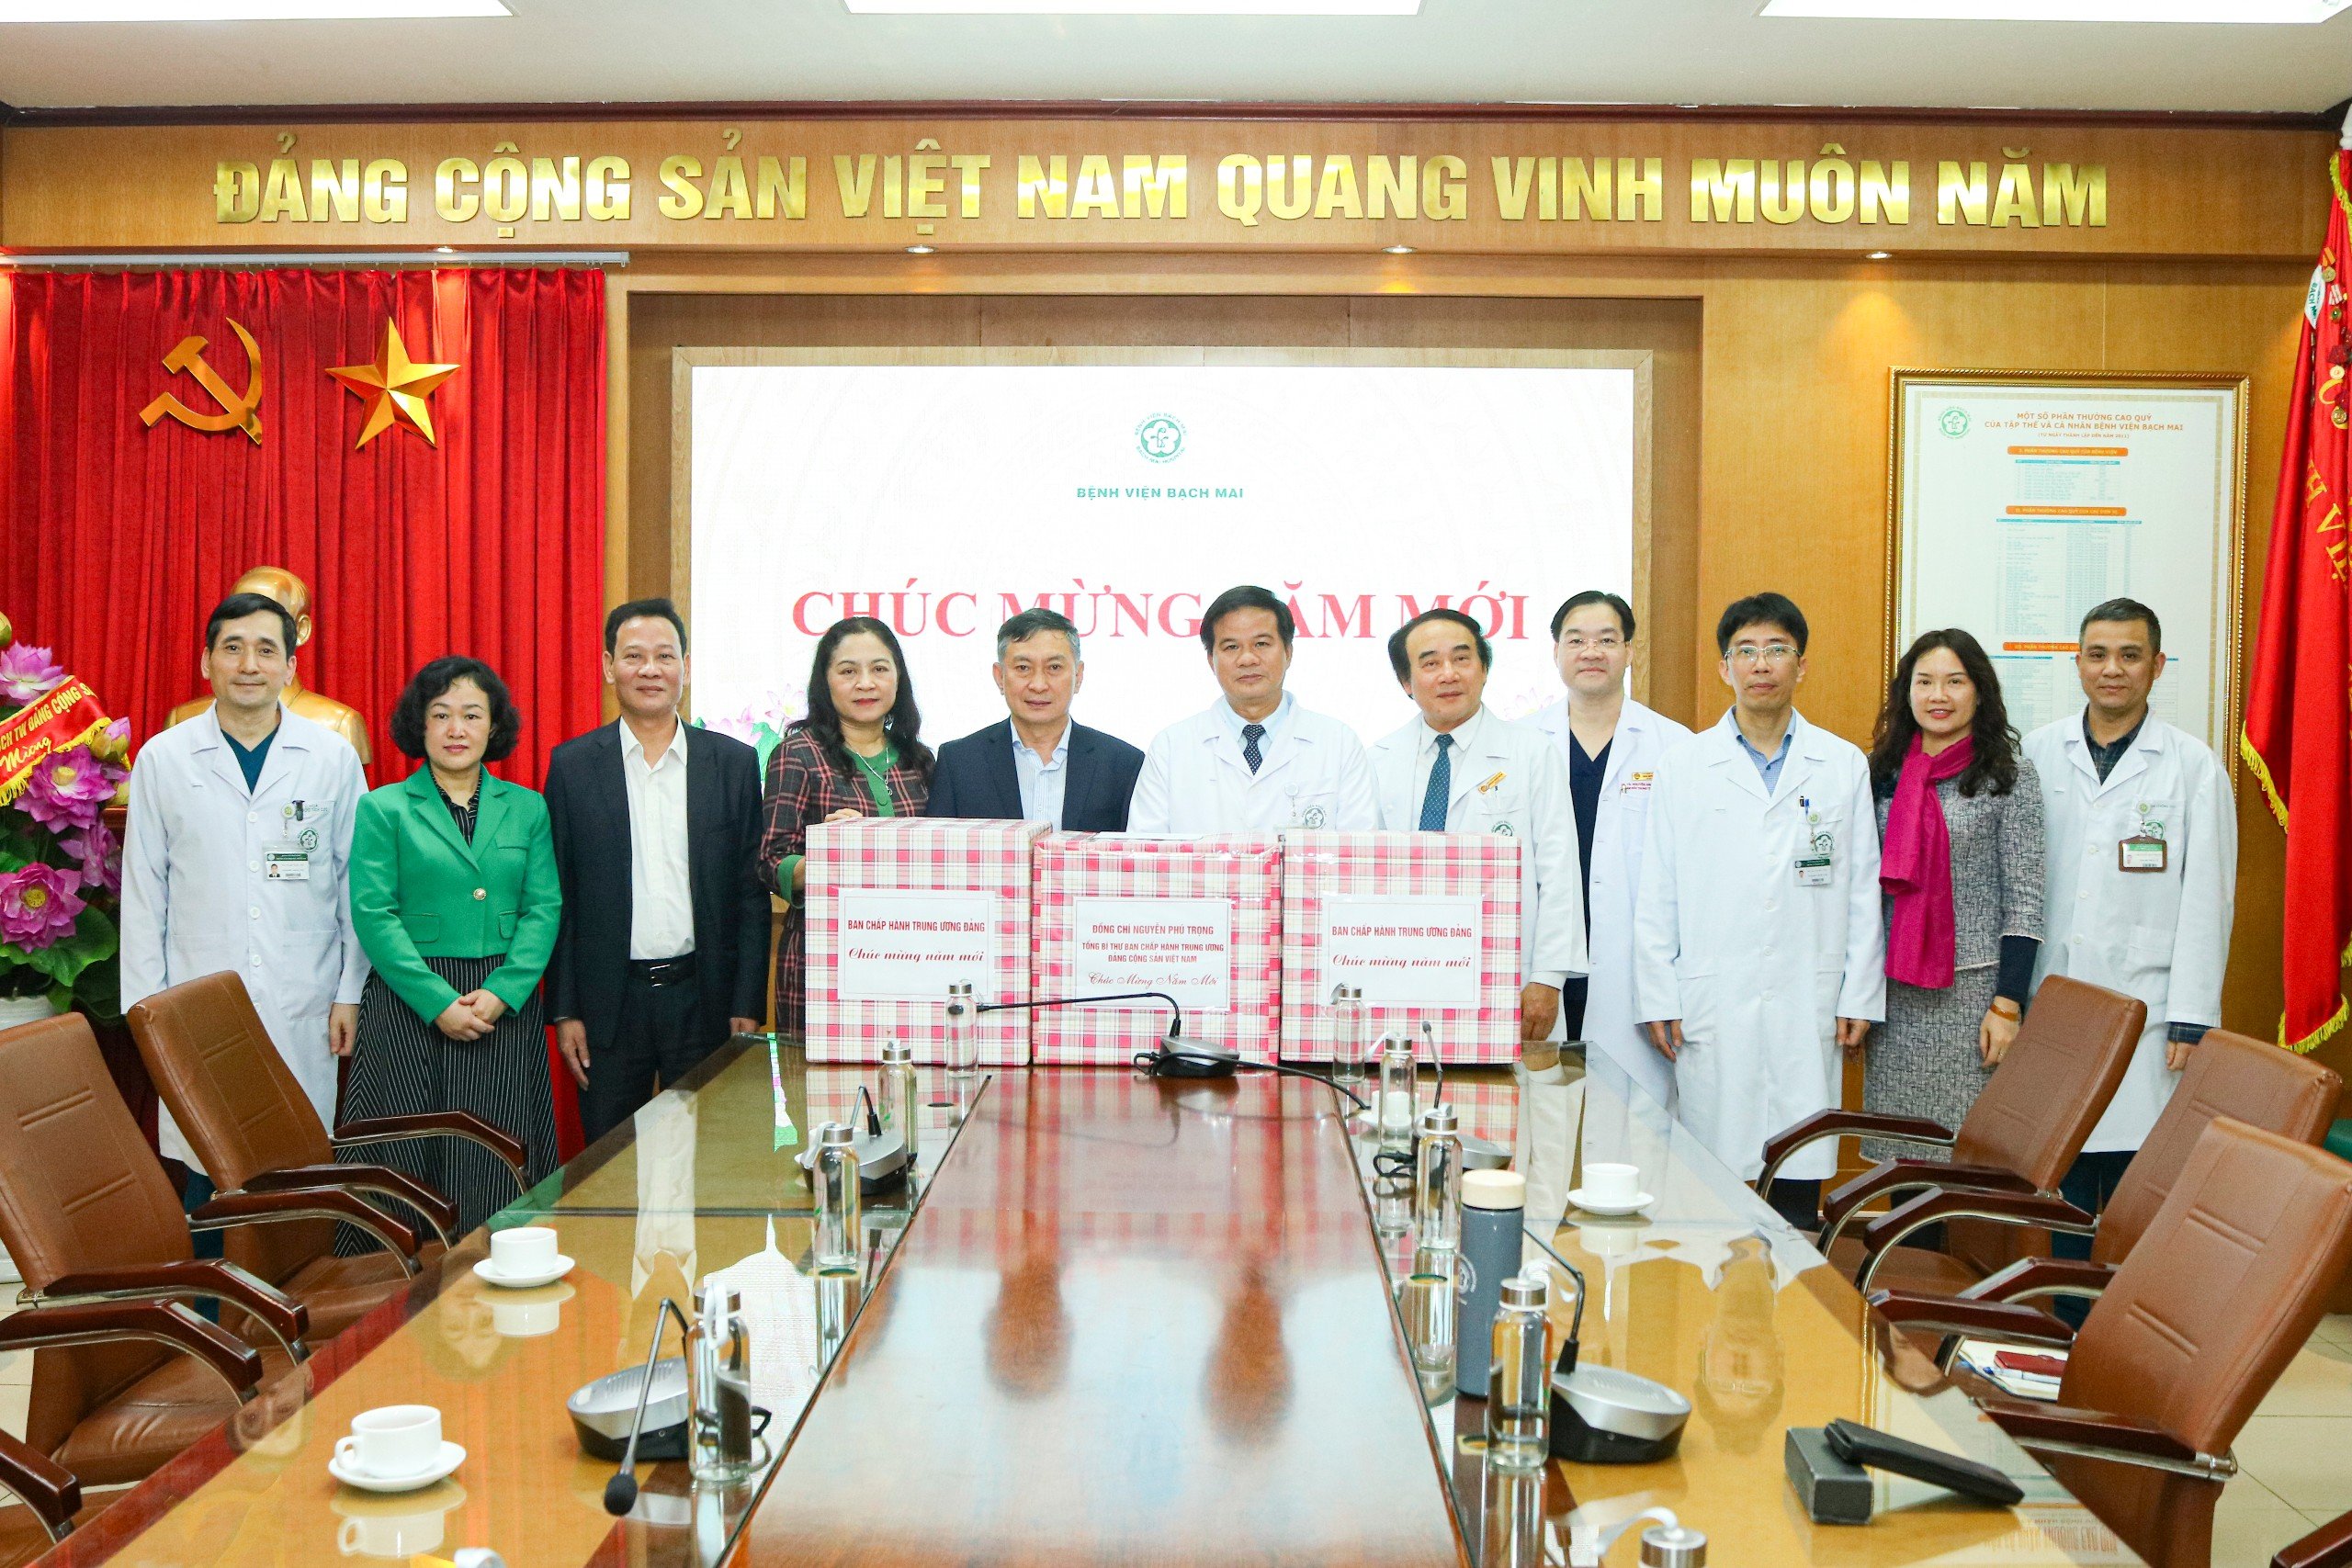 Bệnh viện Bạch Mai vinh dự nhận quà Tết của Tổng Bí thư Nguyễn Phú Trọng và Văn phòng Trung ương Đảng- Ảnh 1.